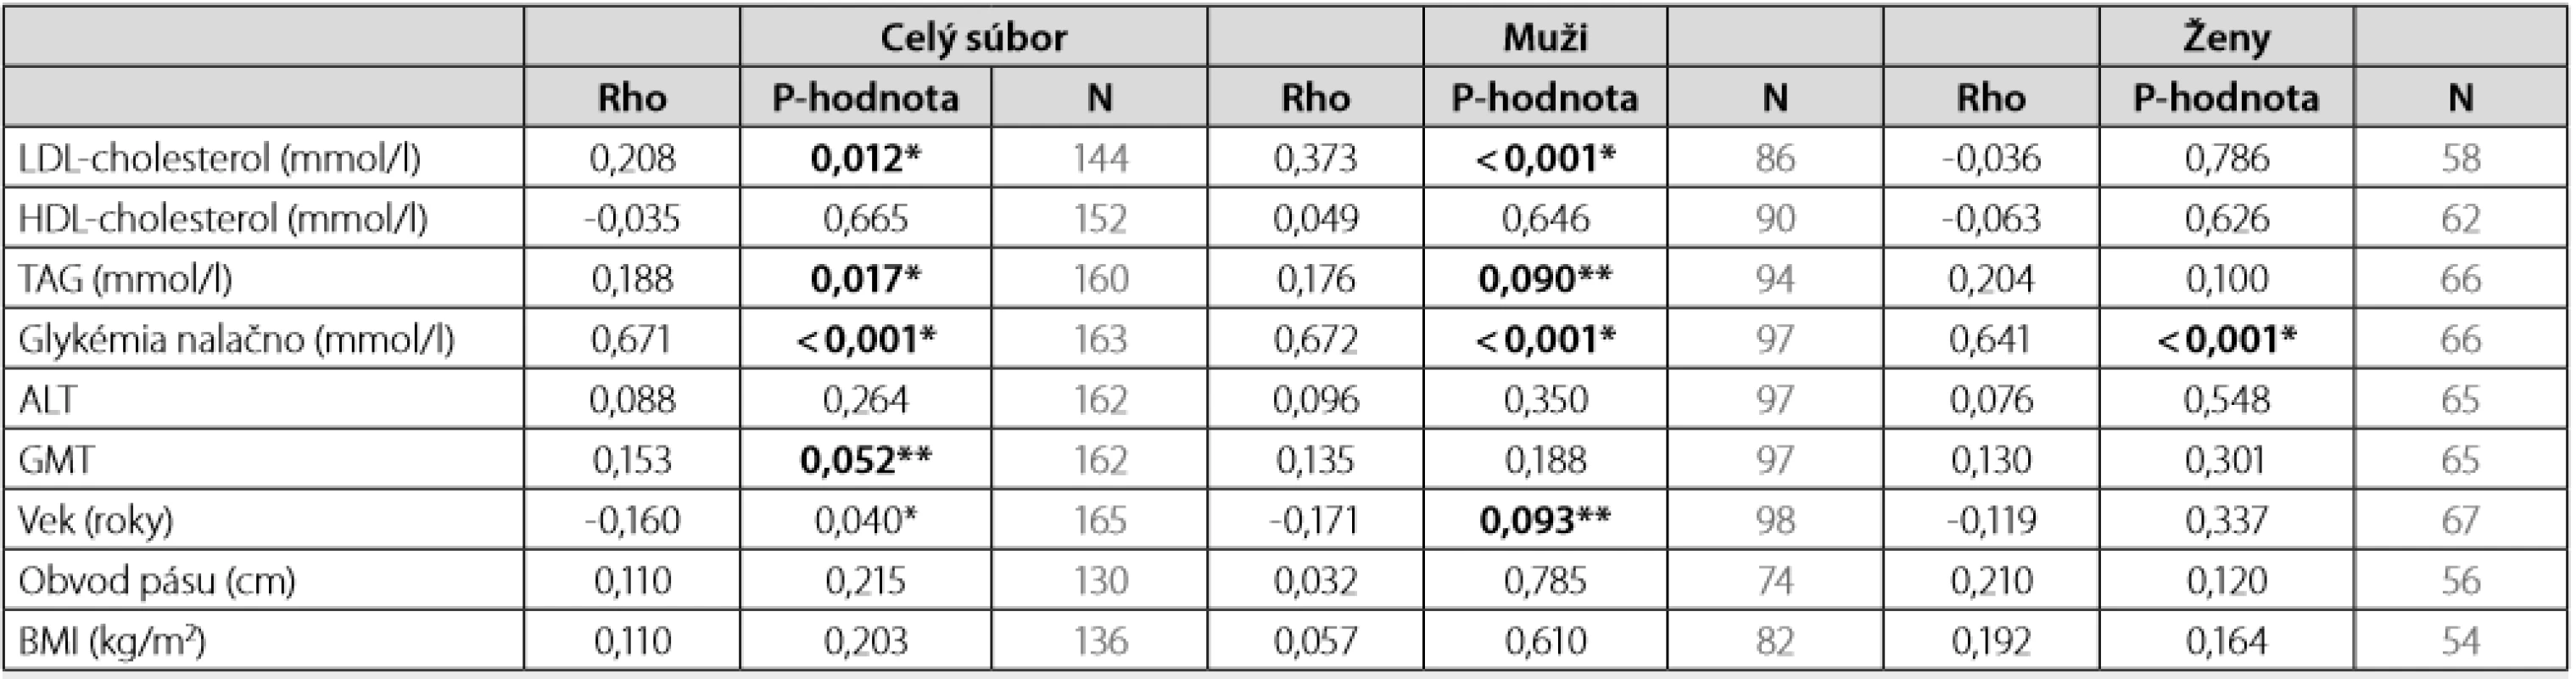 Spearmanov korelačný koeficient rho medzi HbA1c (%) a sledovanými parametrami 